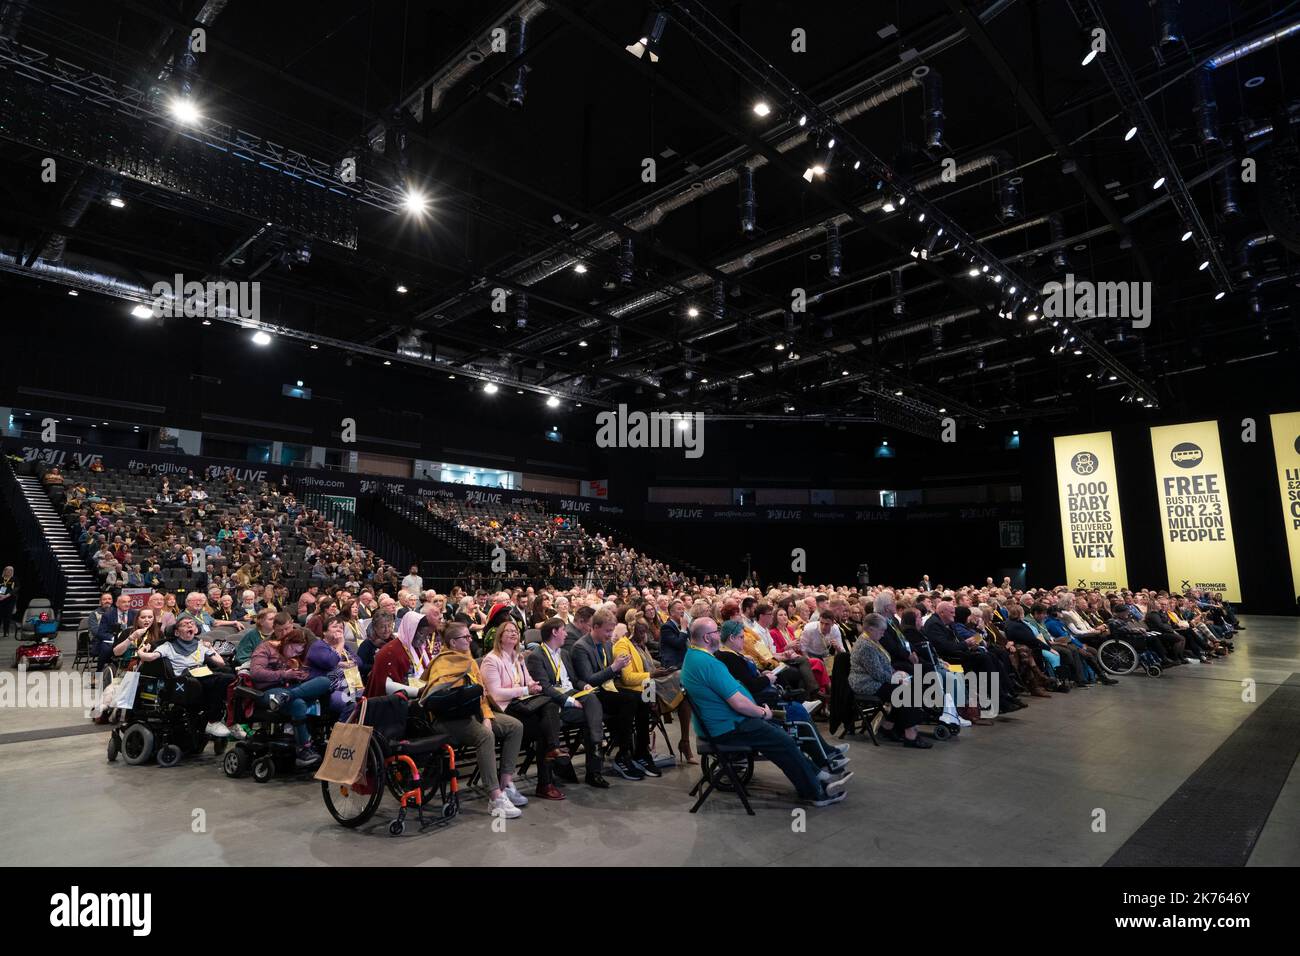 Conférence SNP 2022, Aberdeen. Intérieur de la salle de l'arène P&J Live avec les participants à l'écoute des discours. Banque D'Images